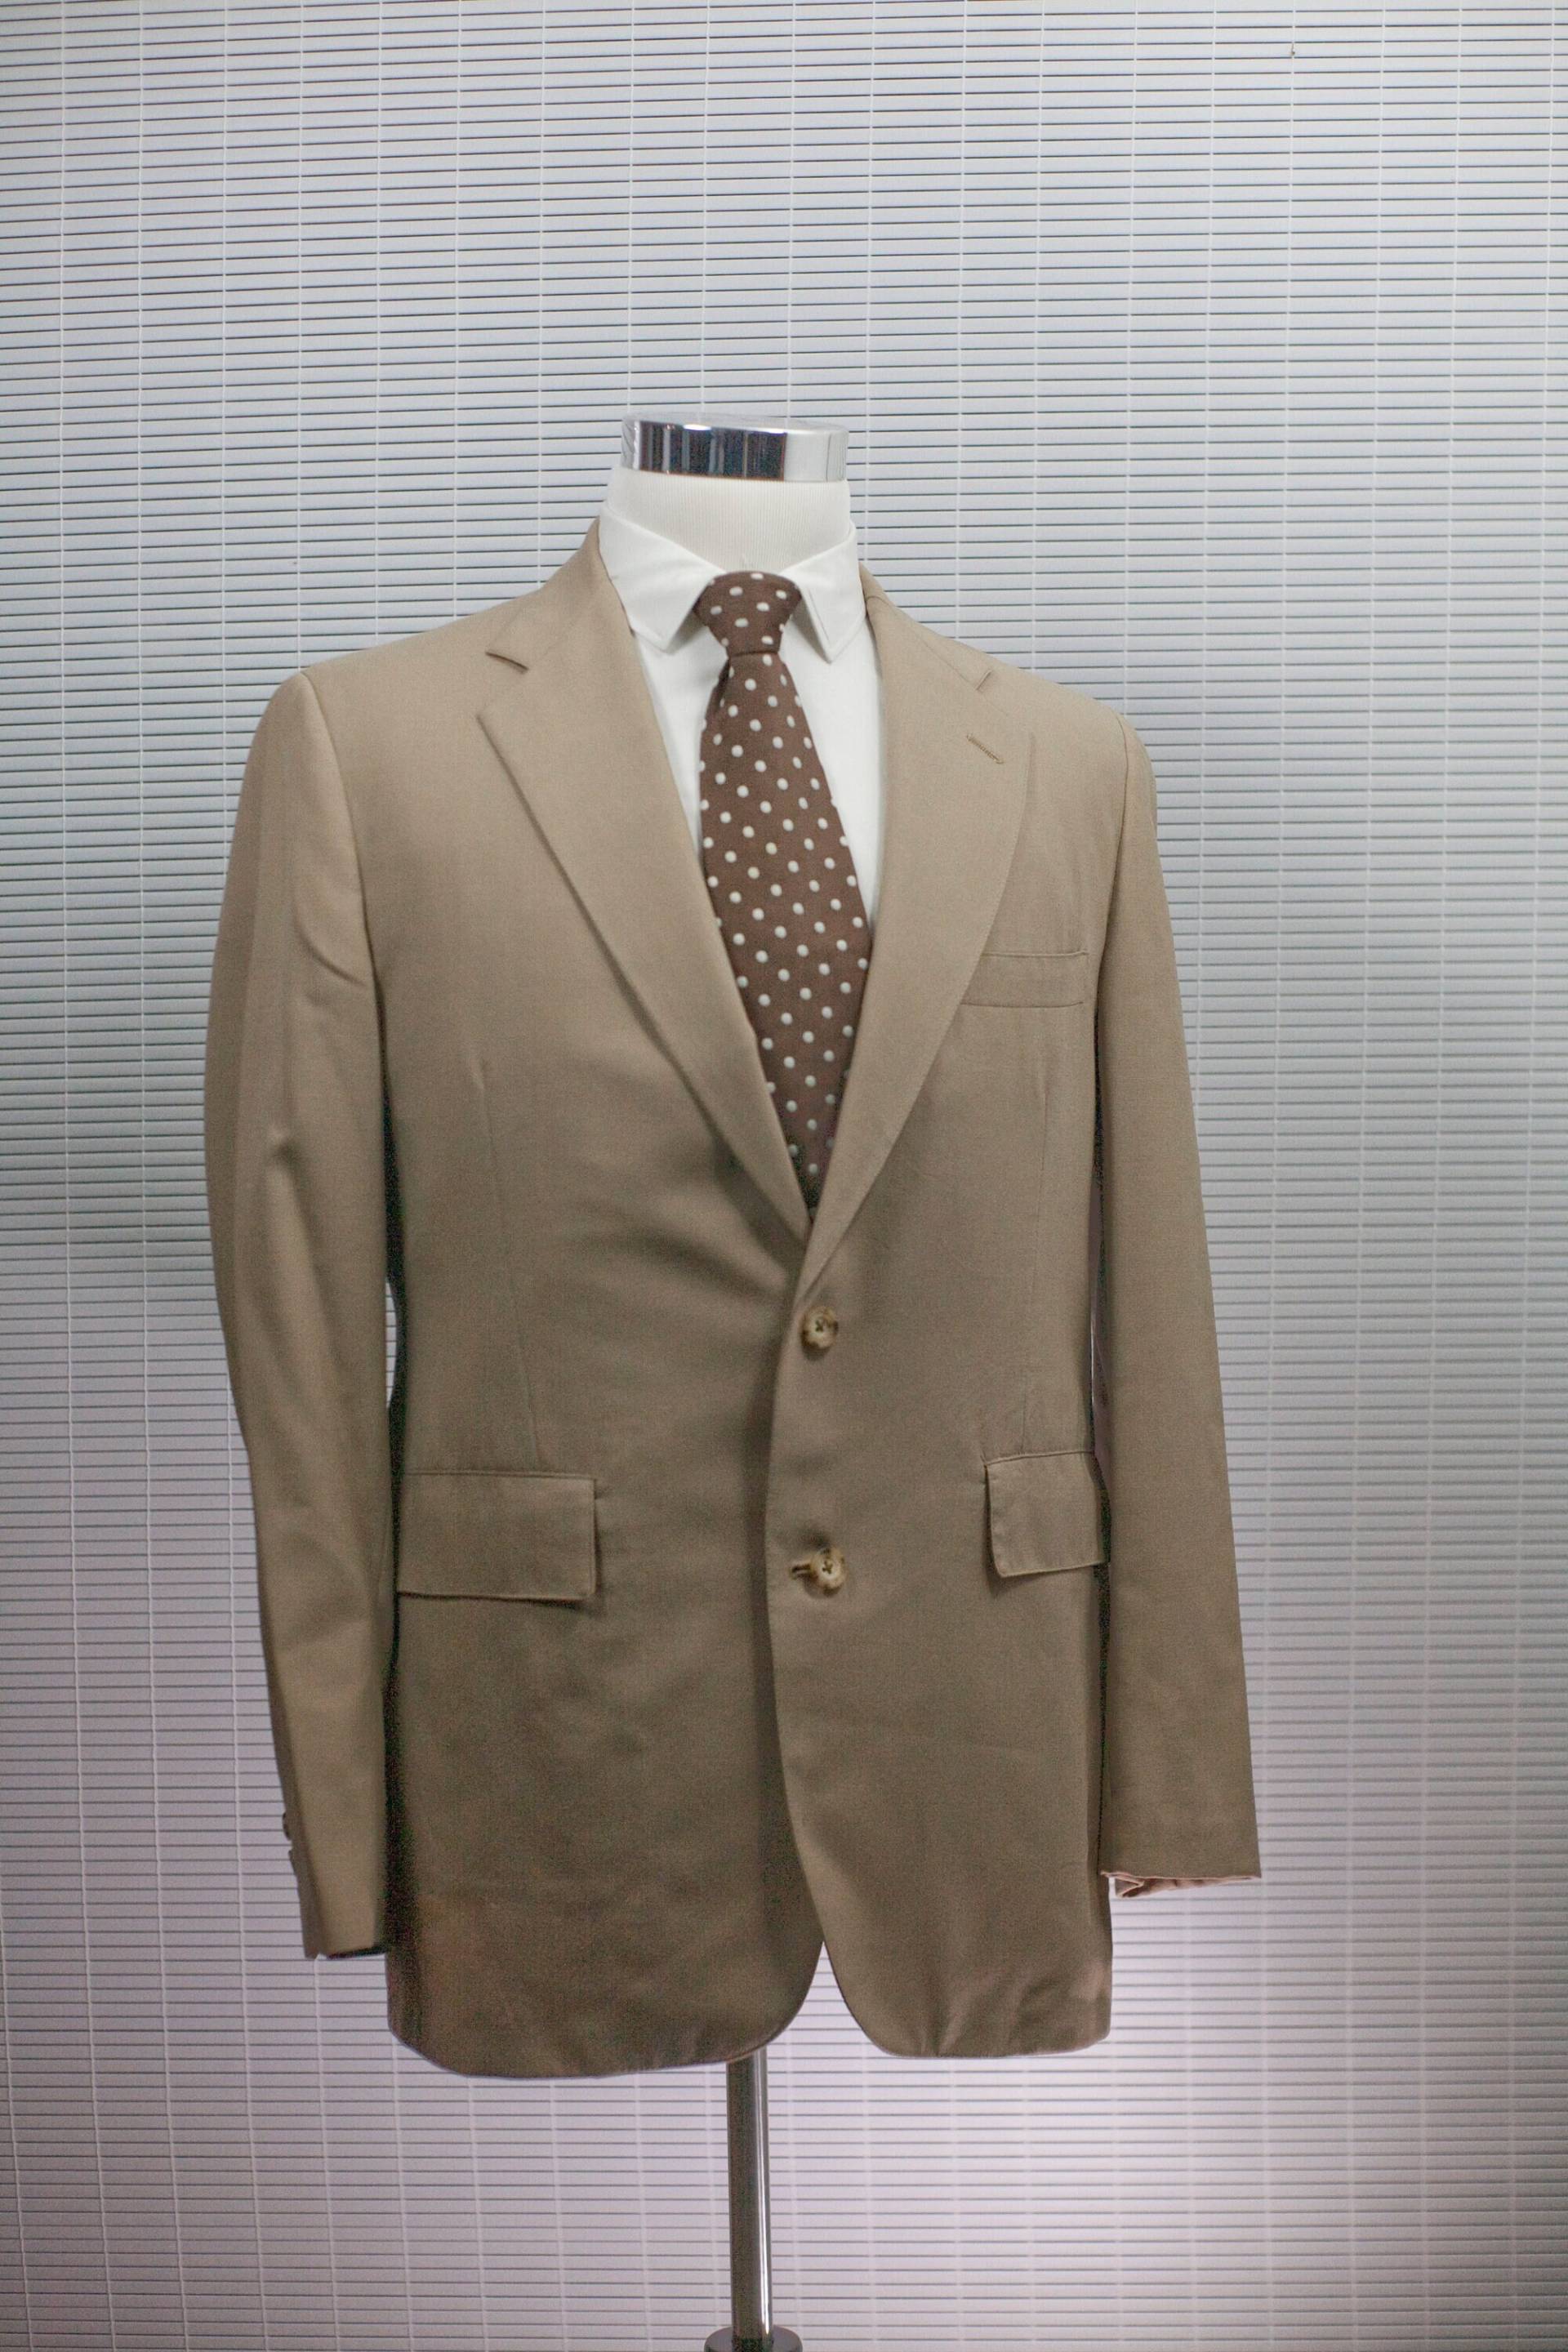 Handgeschneiderte Große Tan Blazer/Herren Vintage Anzugjacke #m036 von BrightWall